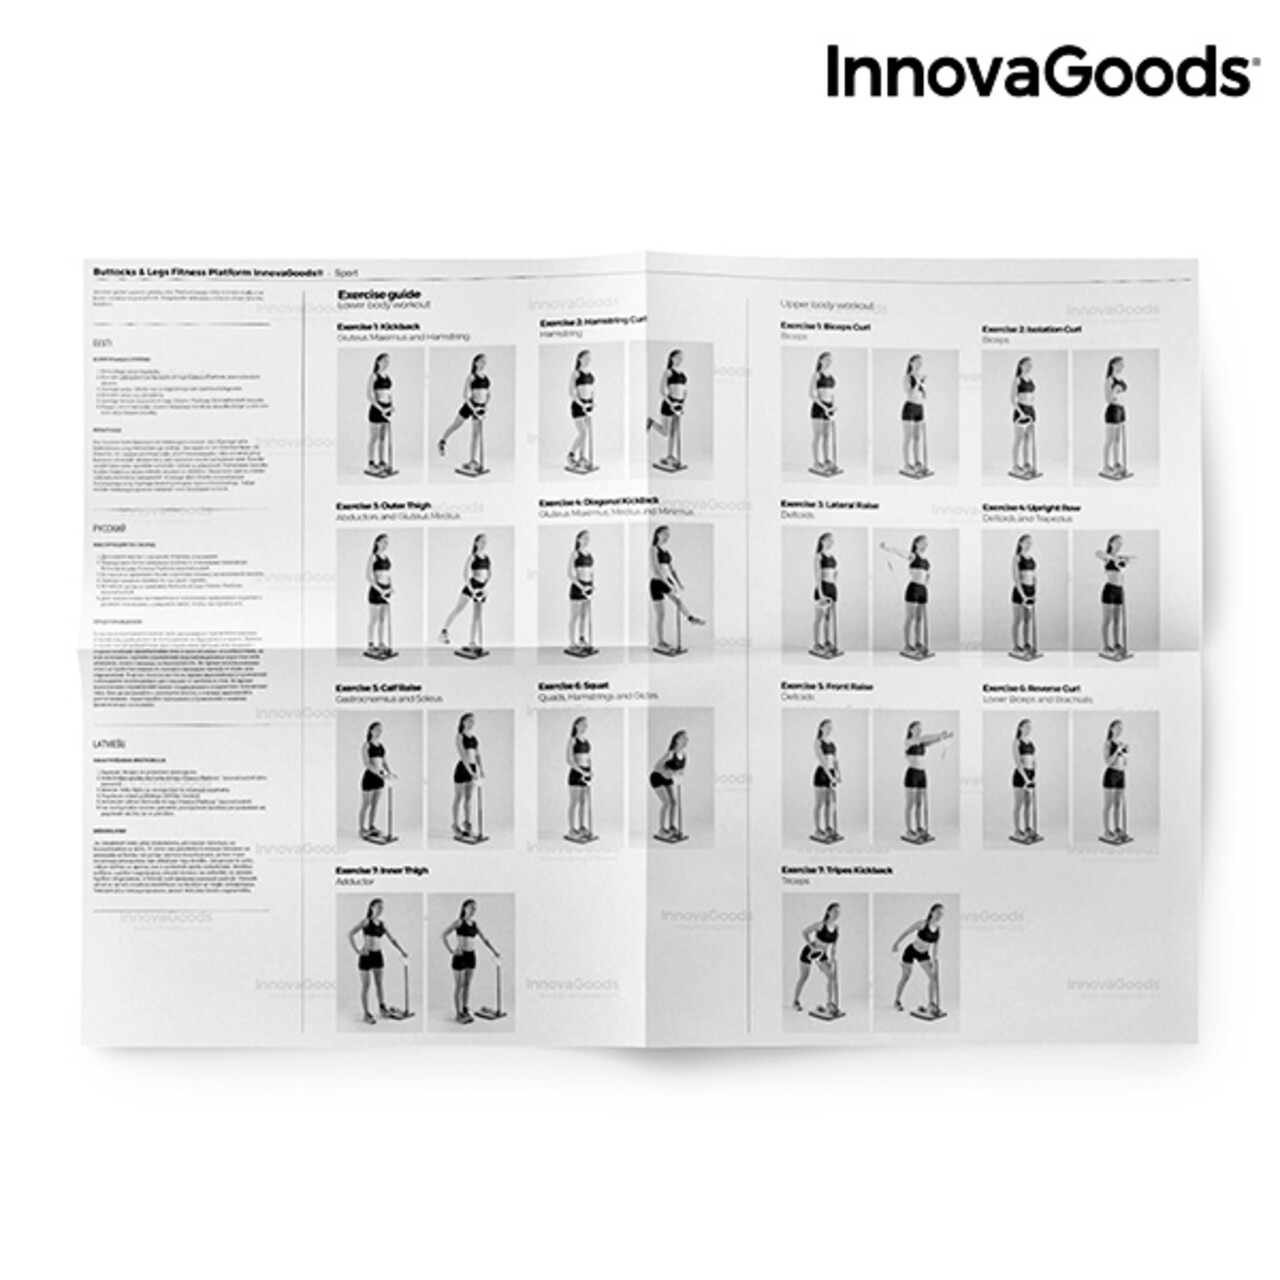 Platforma De Fitness Pentru Fese Si Picioare InnovaGoods + Ghid De Exercitii